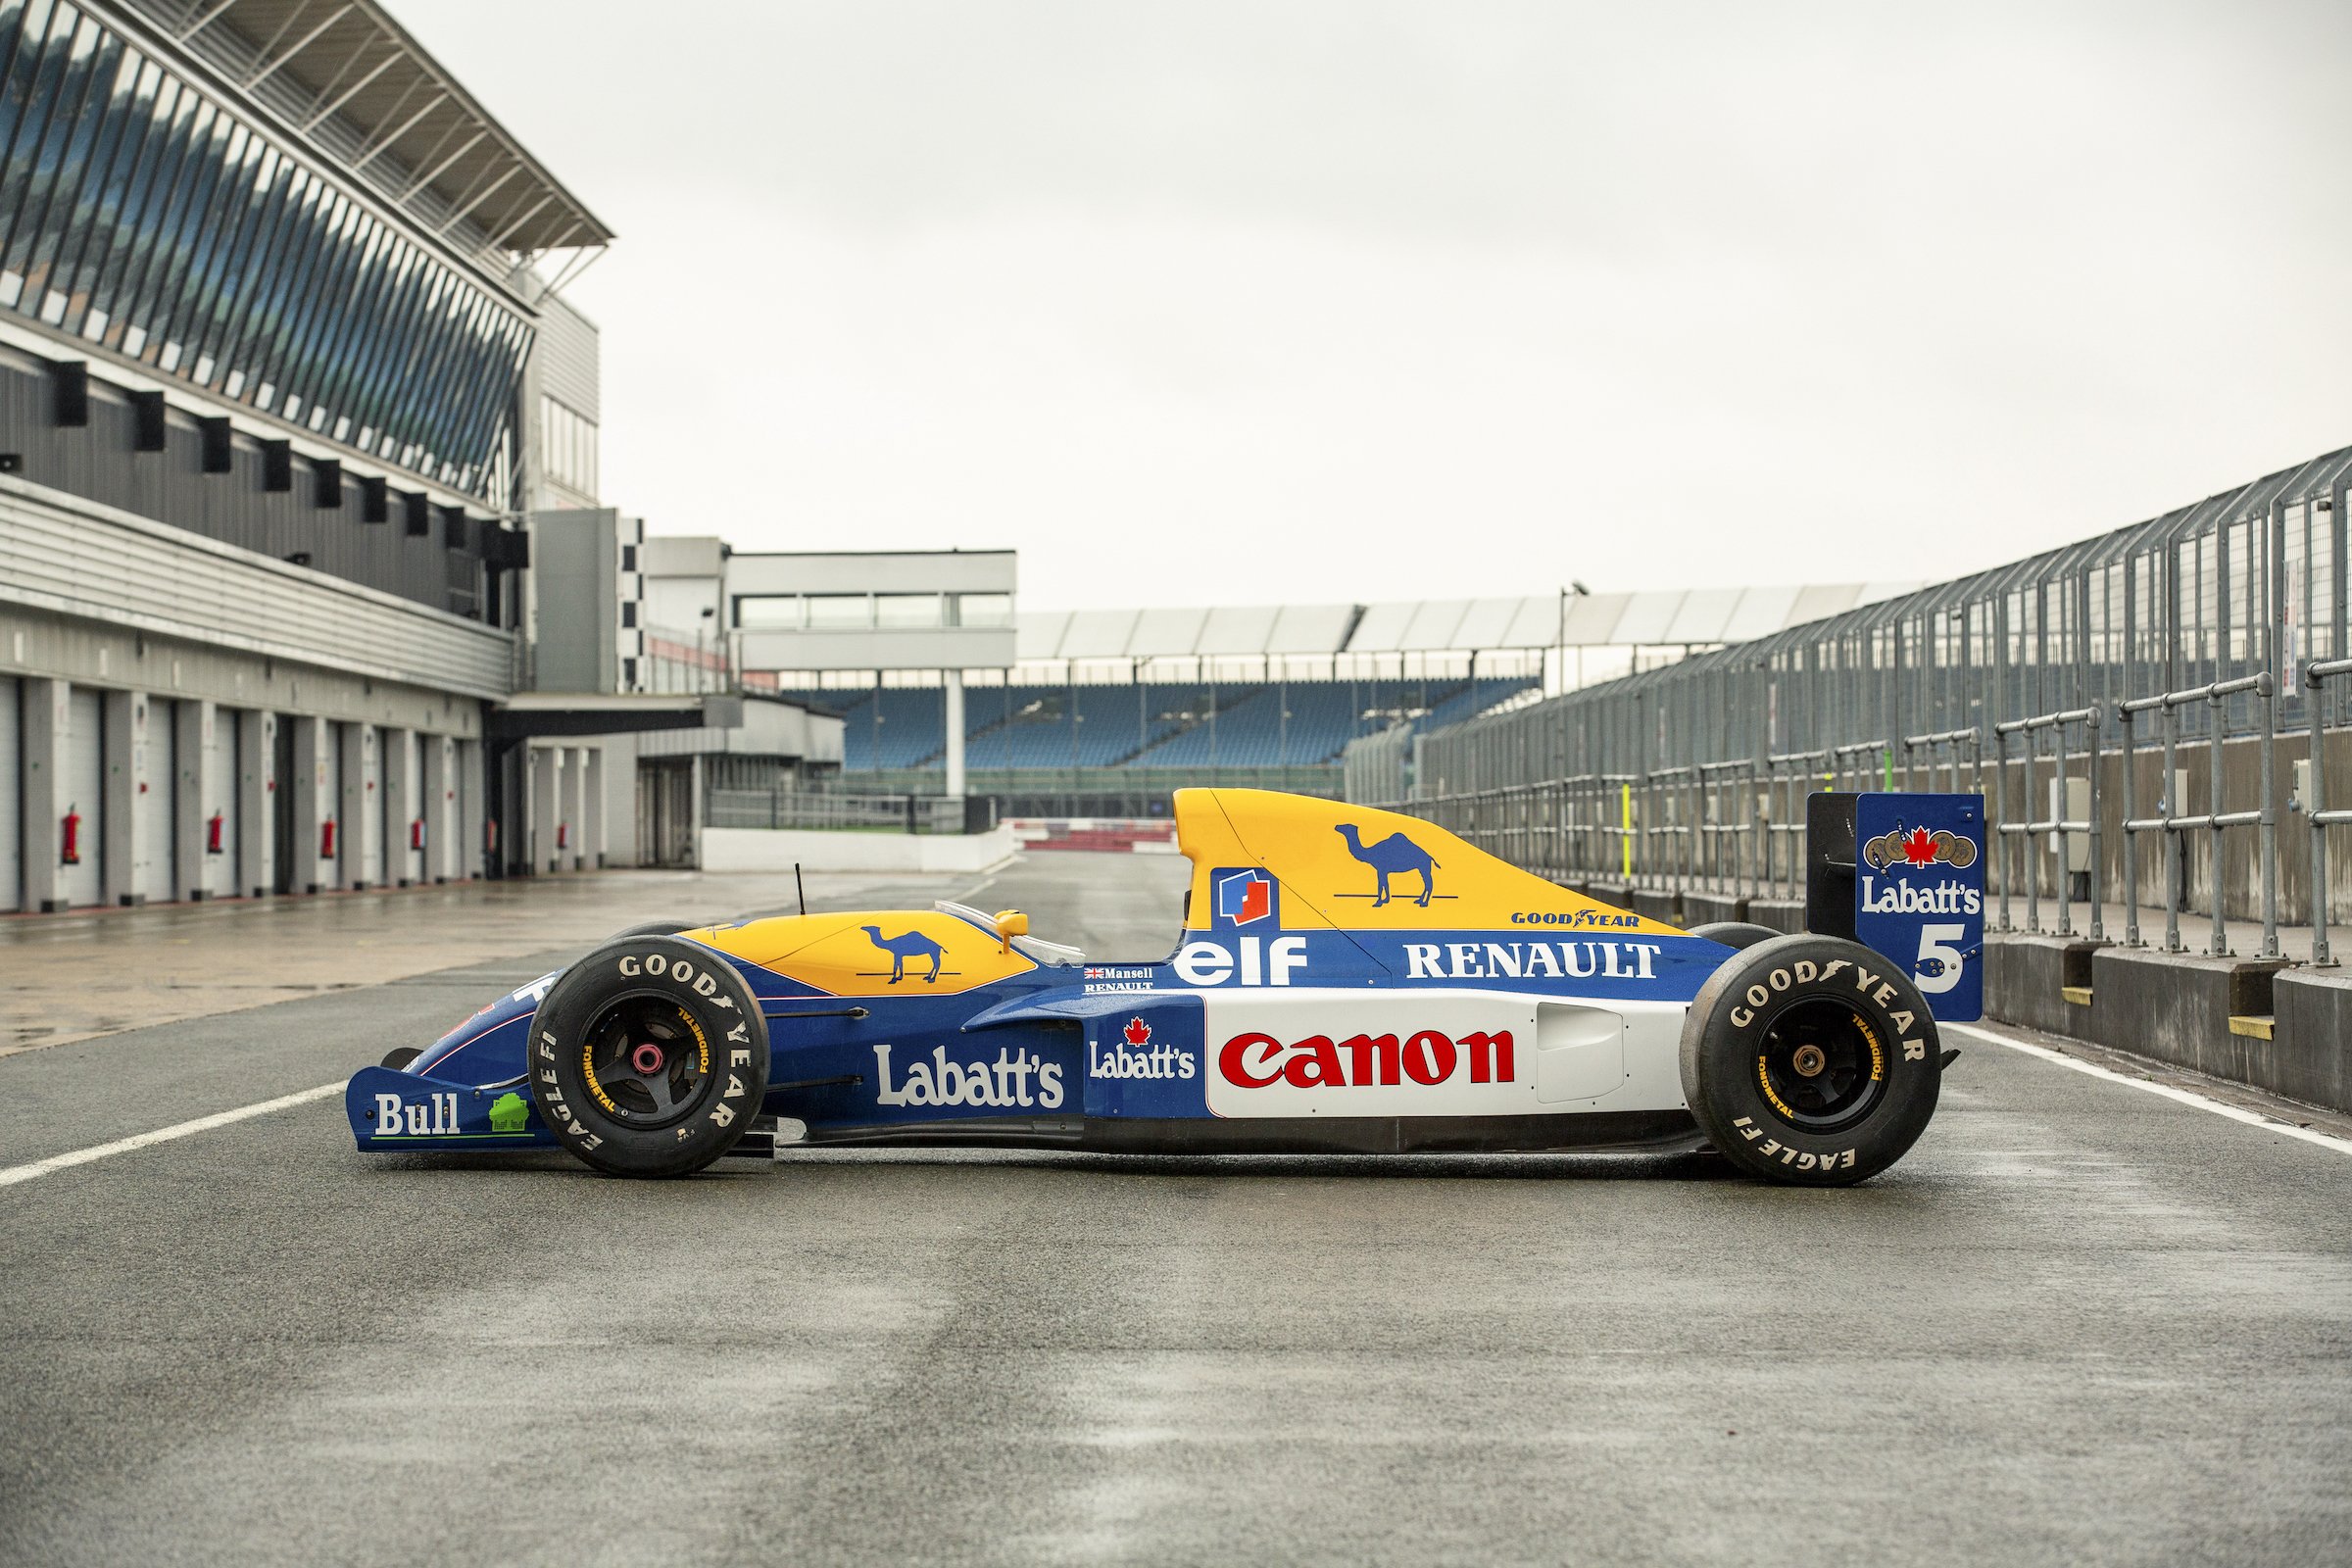 The 1991 Williams Fw14